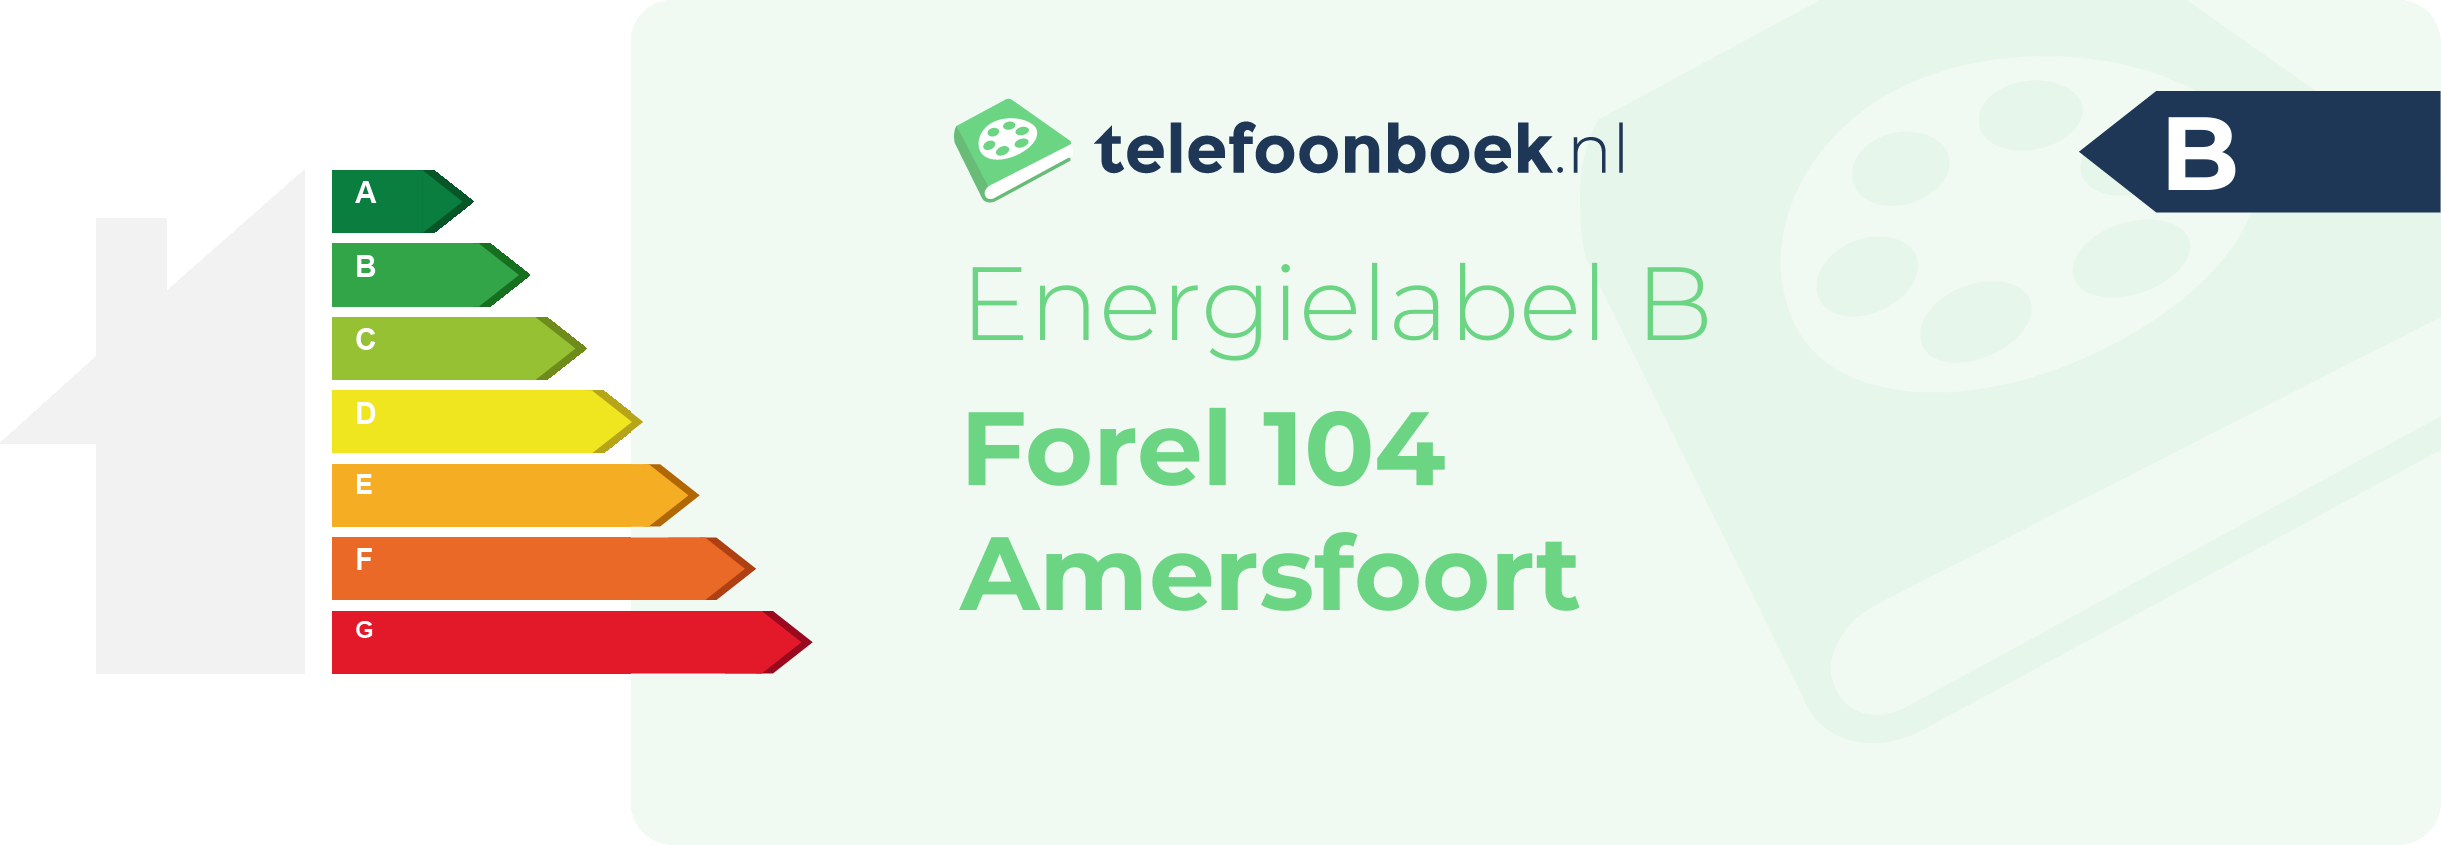 Energielabel Forel 104 Amersfoort